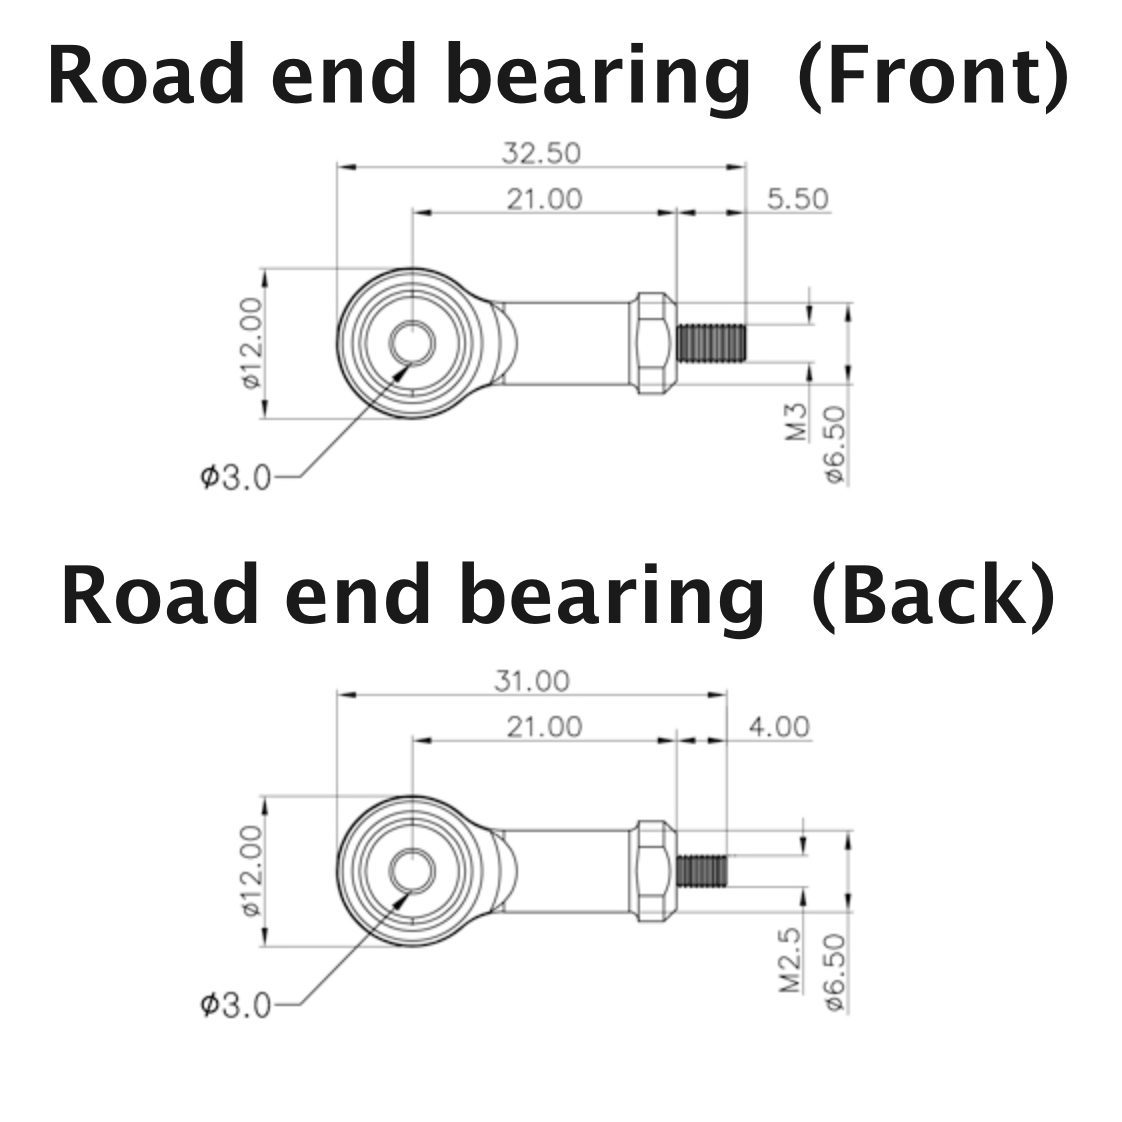 End Bearing (IR-EB01)